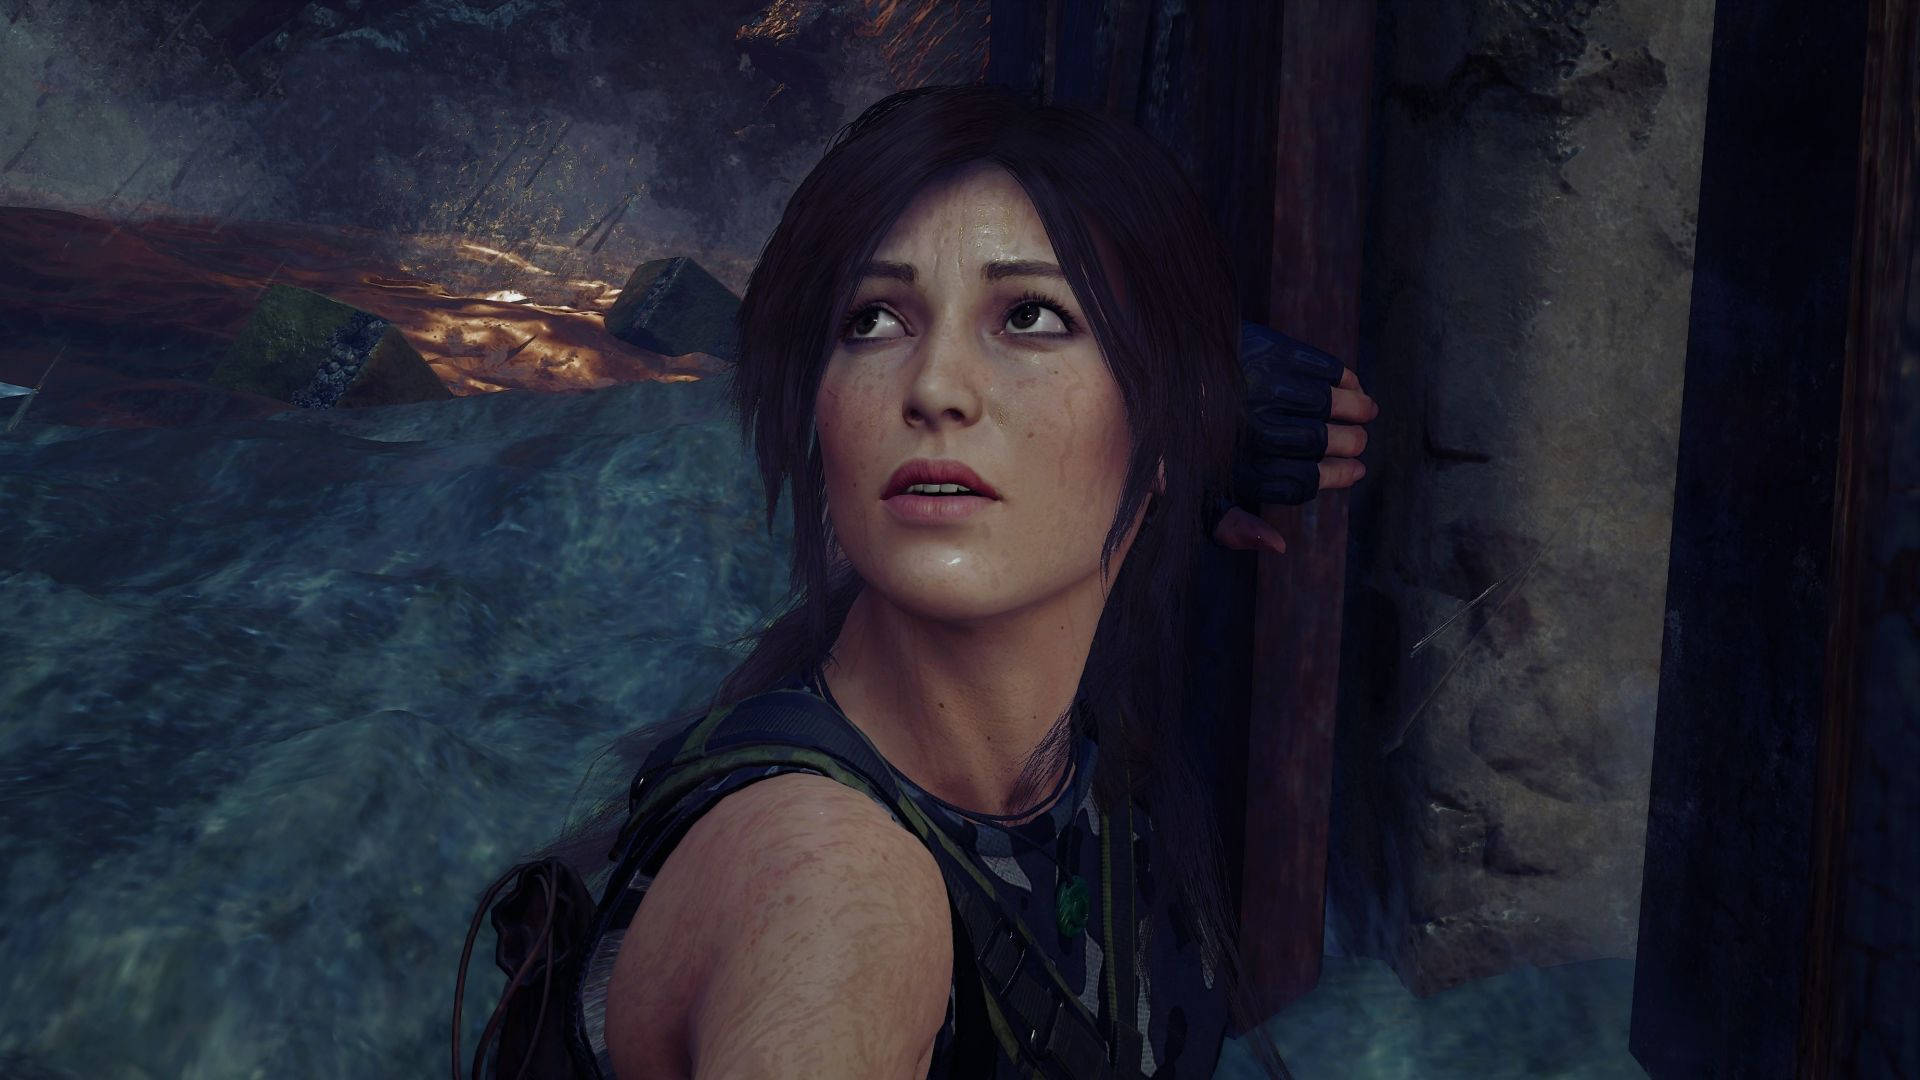 Tombraider Spel Huvudkaraktären Lara Croft. Wallpaper